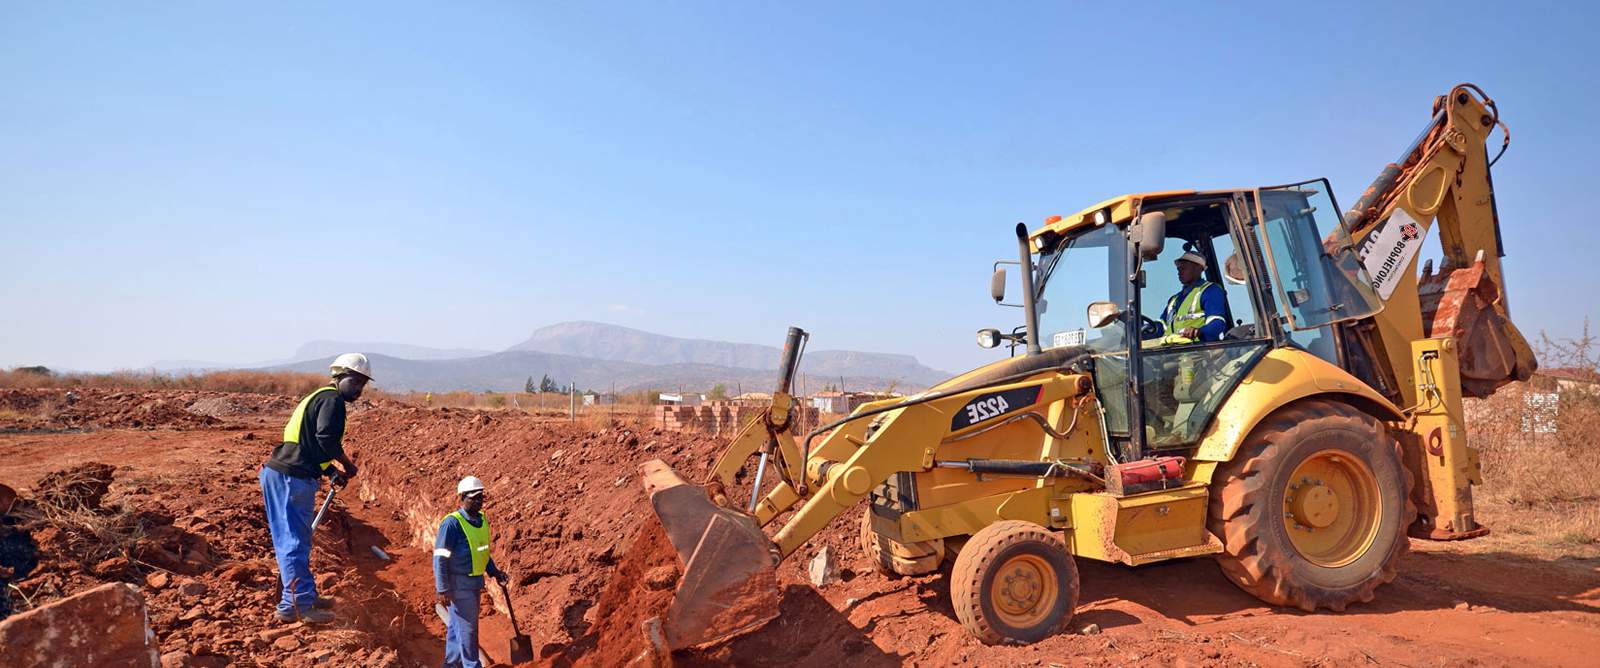 Building Construction & Civil Engineering Works Contractors in Lodwar, Turkana County Kenya